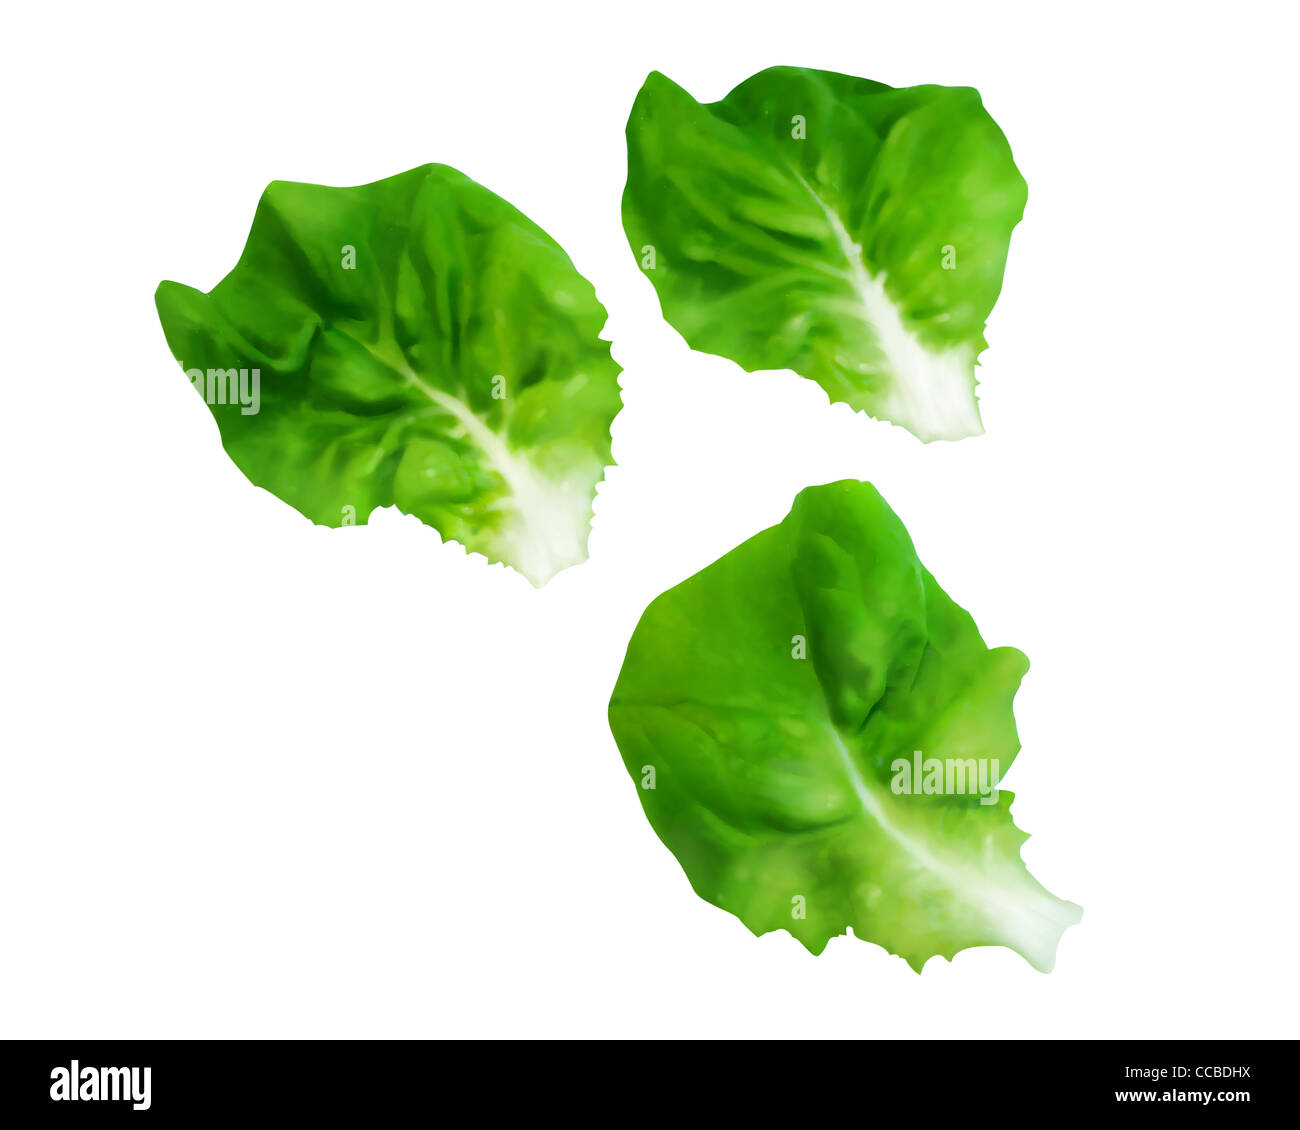 Leaves of Boston Lettuce Stock Photo